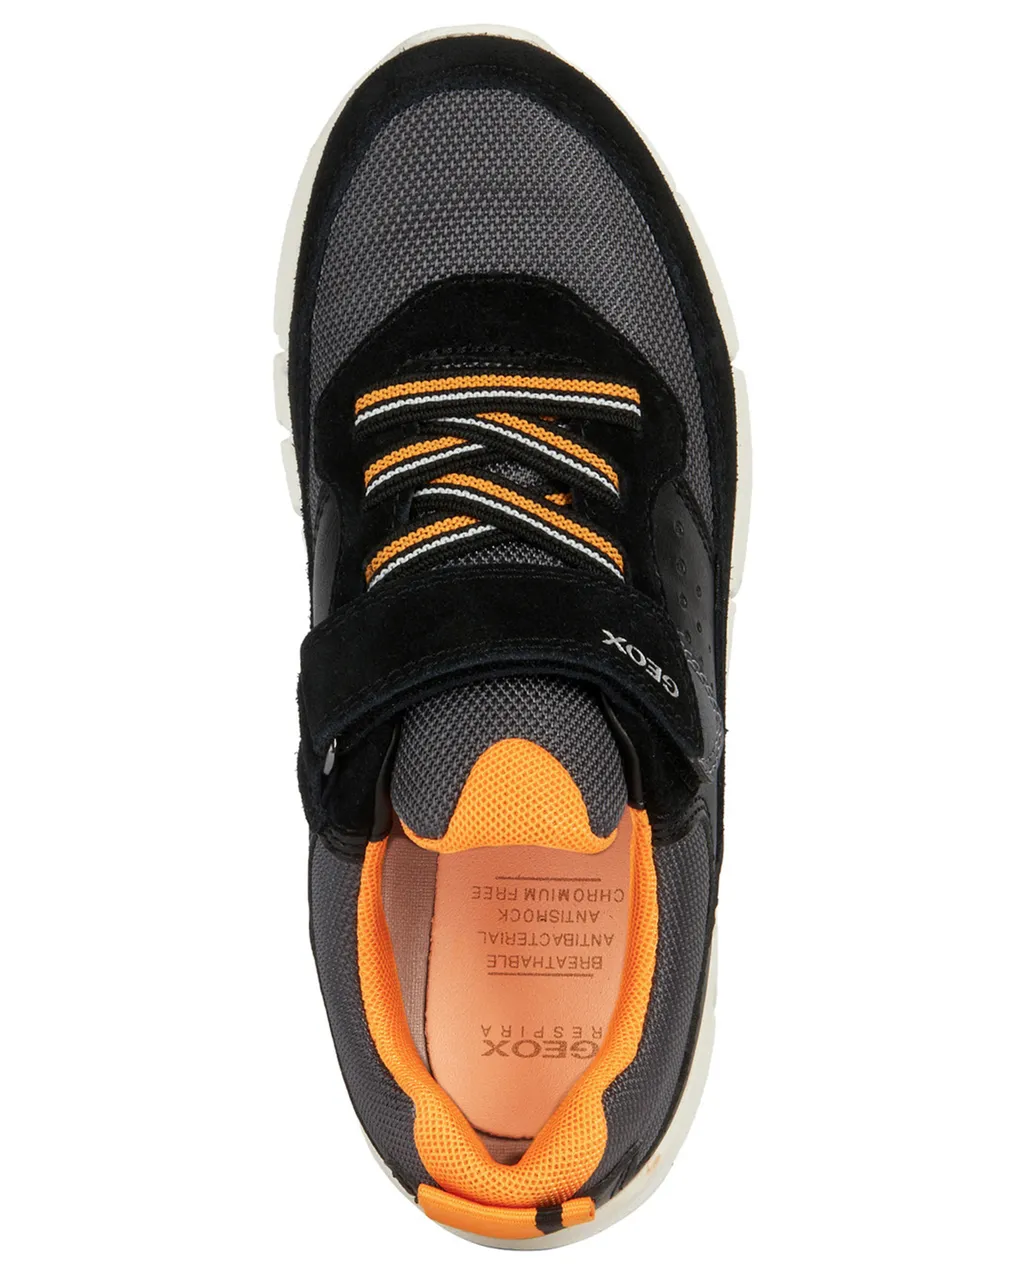 Klett-Sneaker FLEXYPER in black/orange